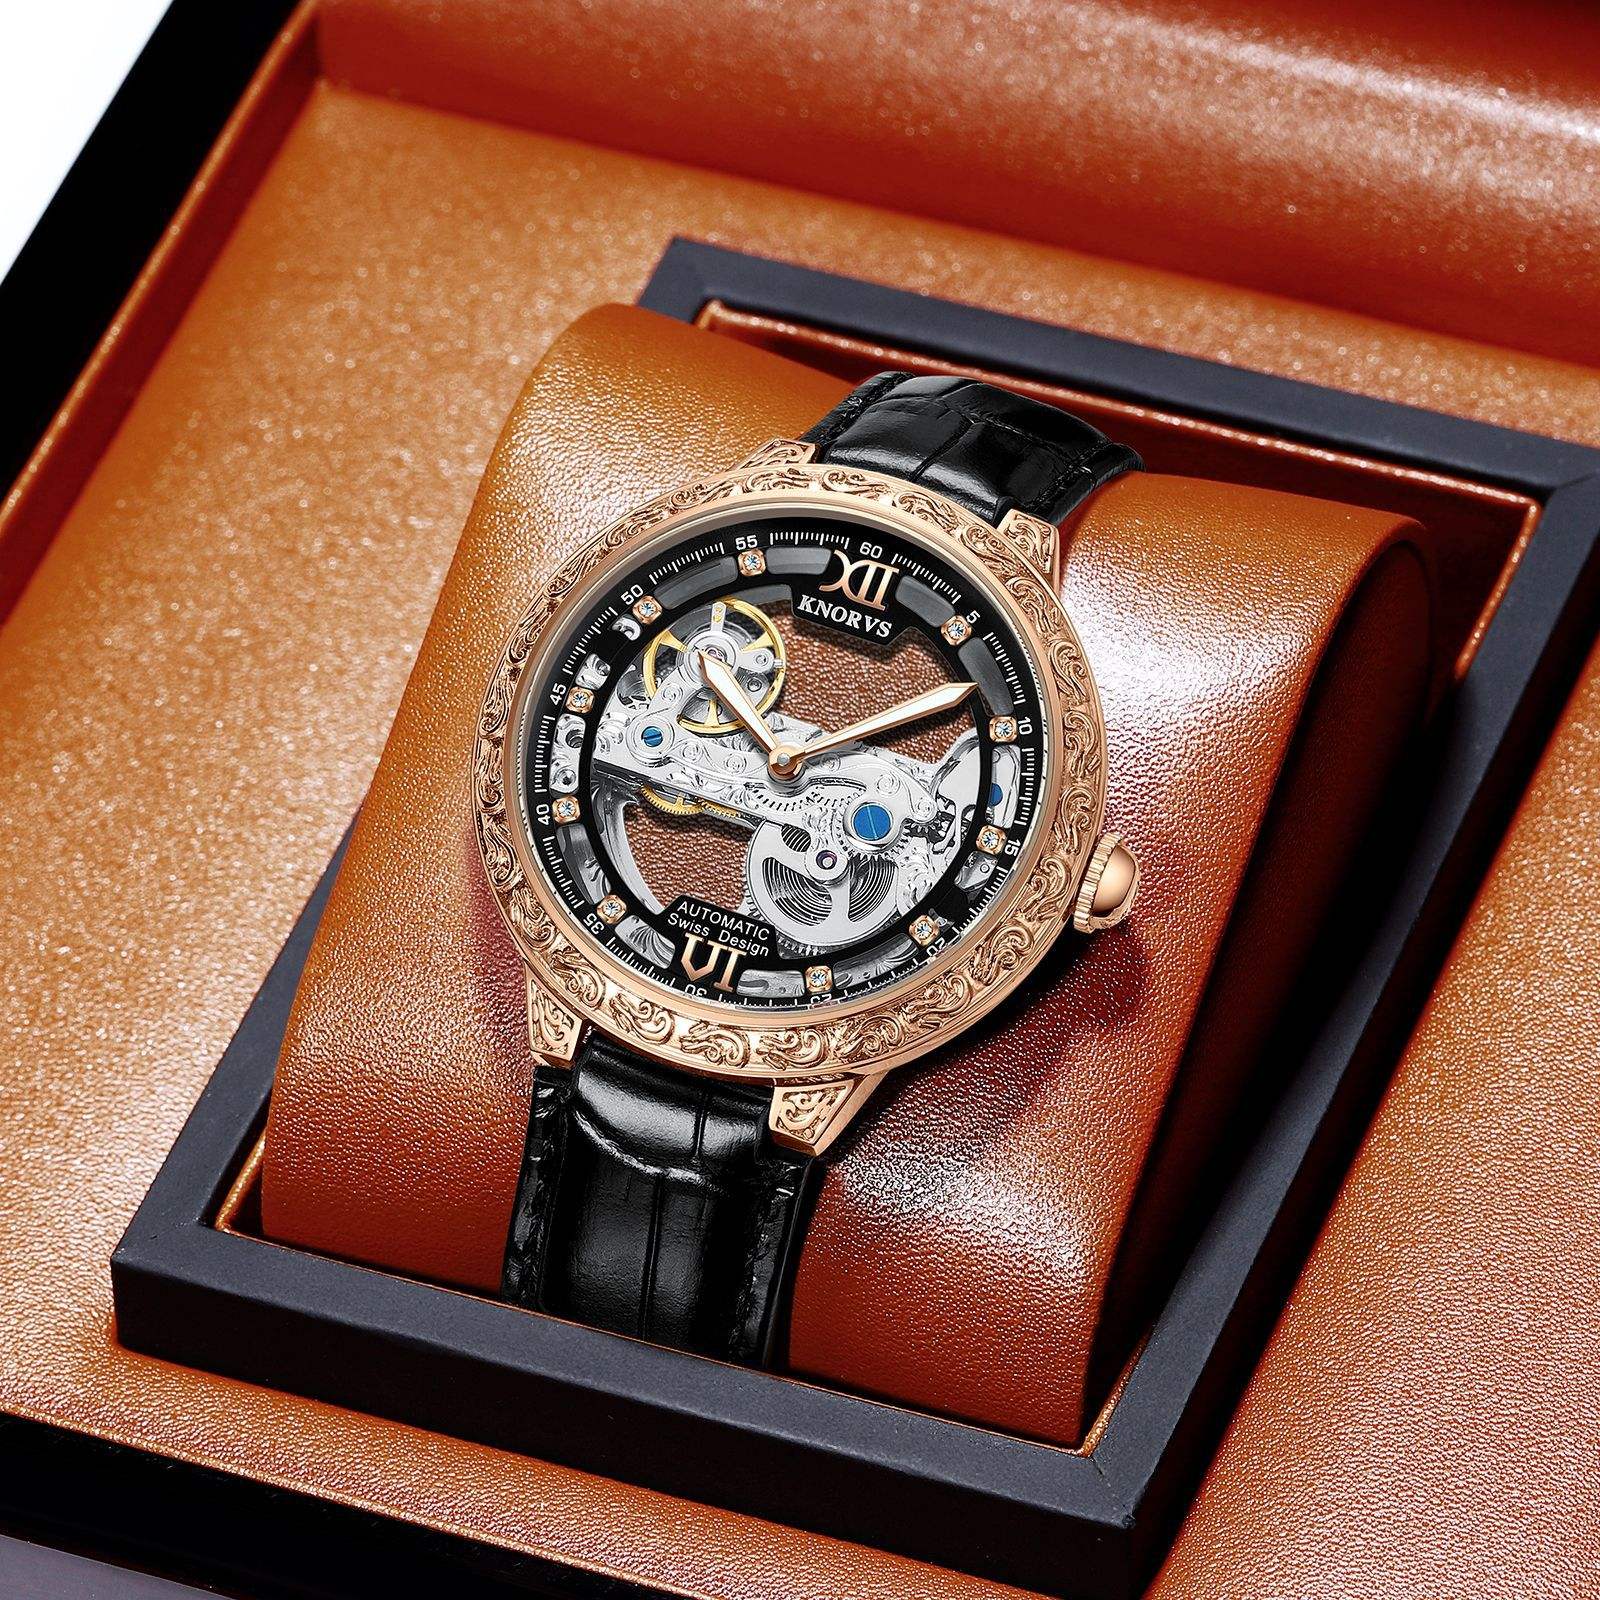 ブランド品は贈り物のカノウィスの時計の透かしのハイエンドの男性の時計の生中継の貨物の機械の時計の国産の腕時計を送ります